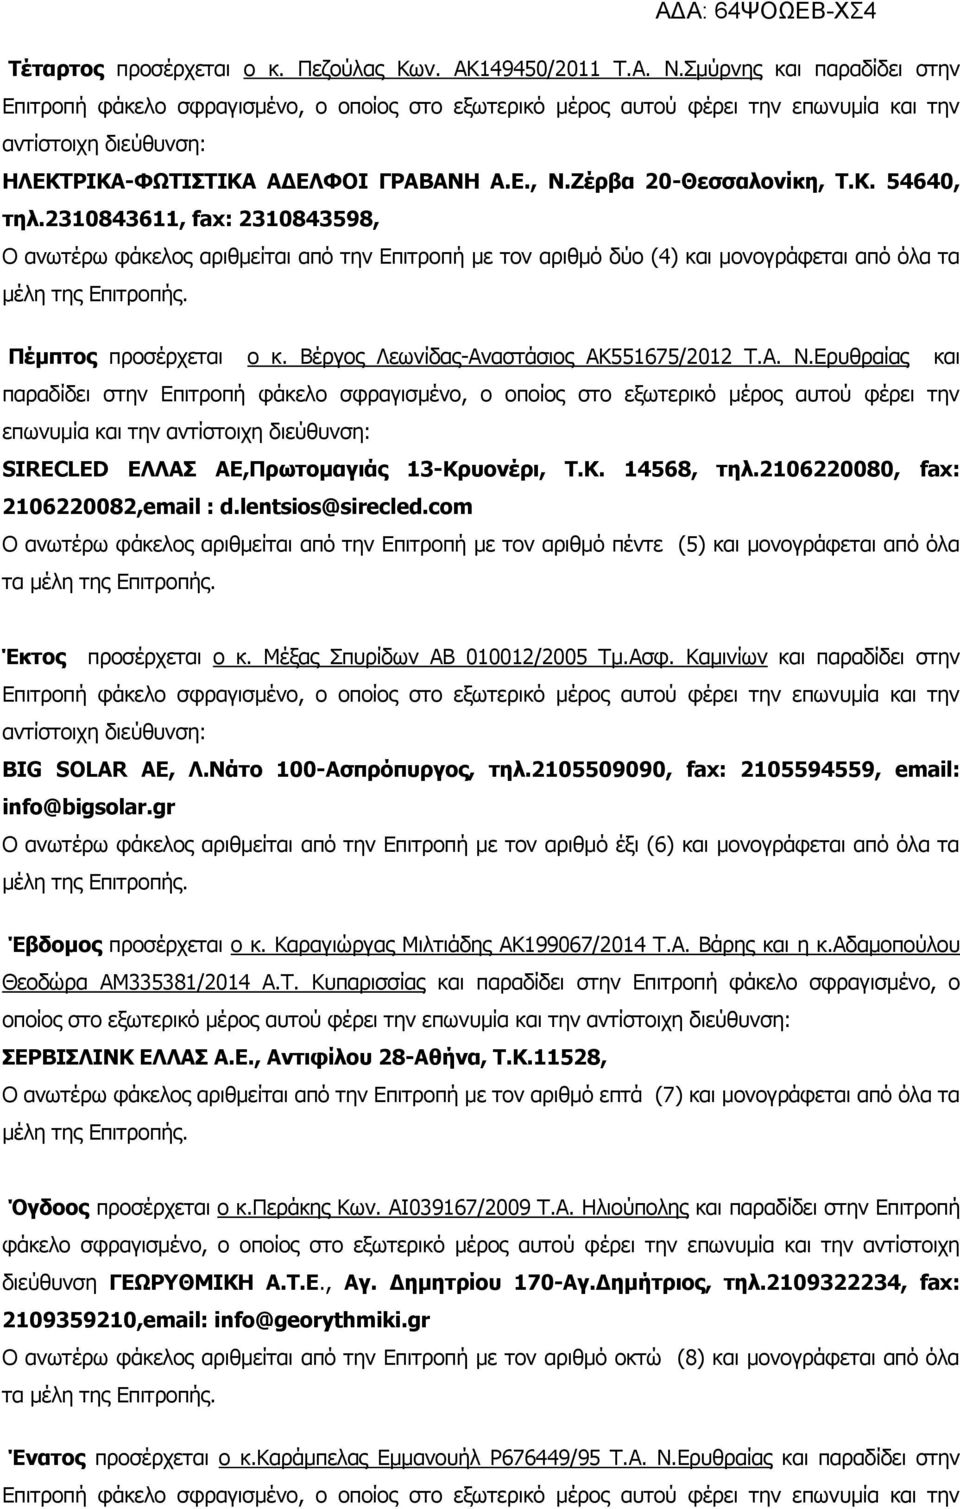 Ζέρβα 20-Θεσσαλονίκη, Τ.Κ. 54640, τηλ.2310843611, fax: 2310843598, Ο ανωτέρω φάκελος αριθμείται από την Επιτροπή με τον αριθμό δύο (4) και μονογράφεται από όλα τα μέλη της Επιτροπής.